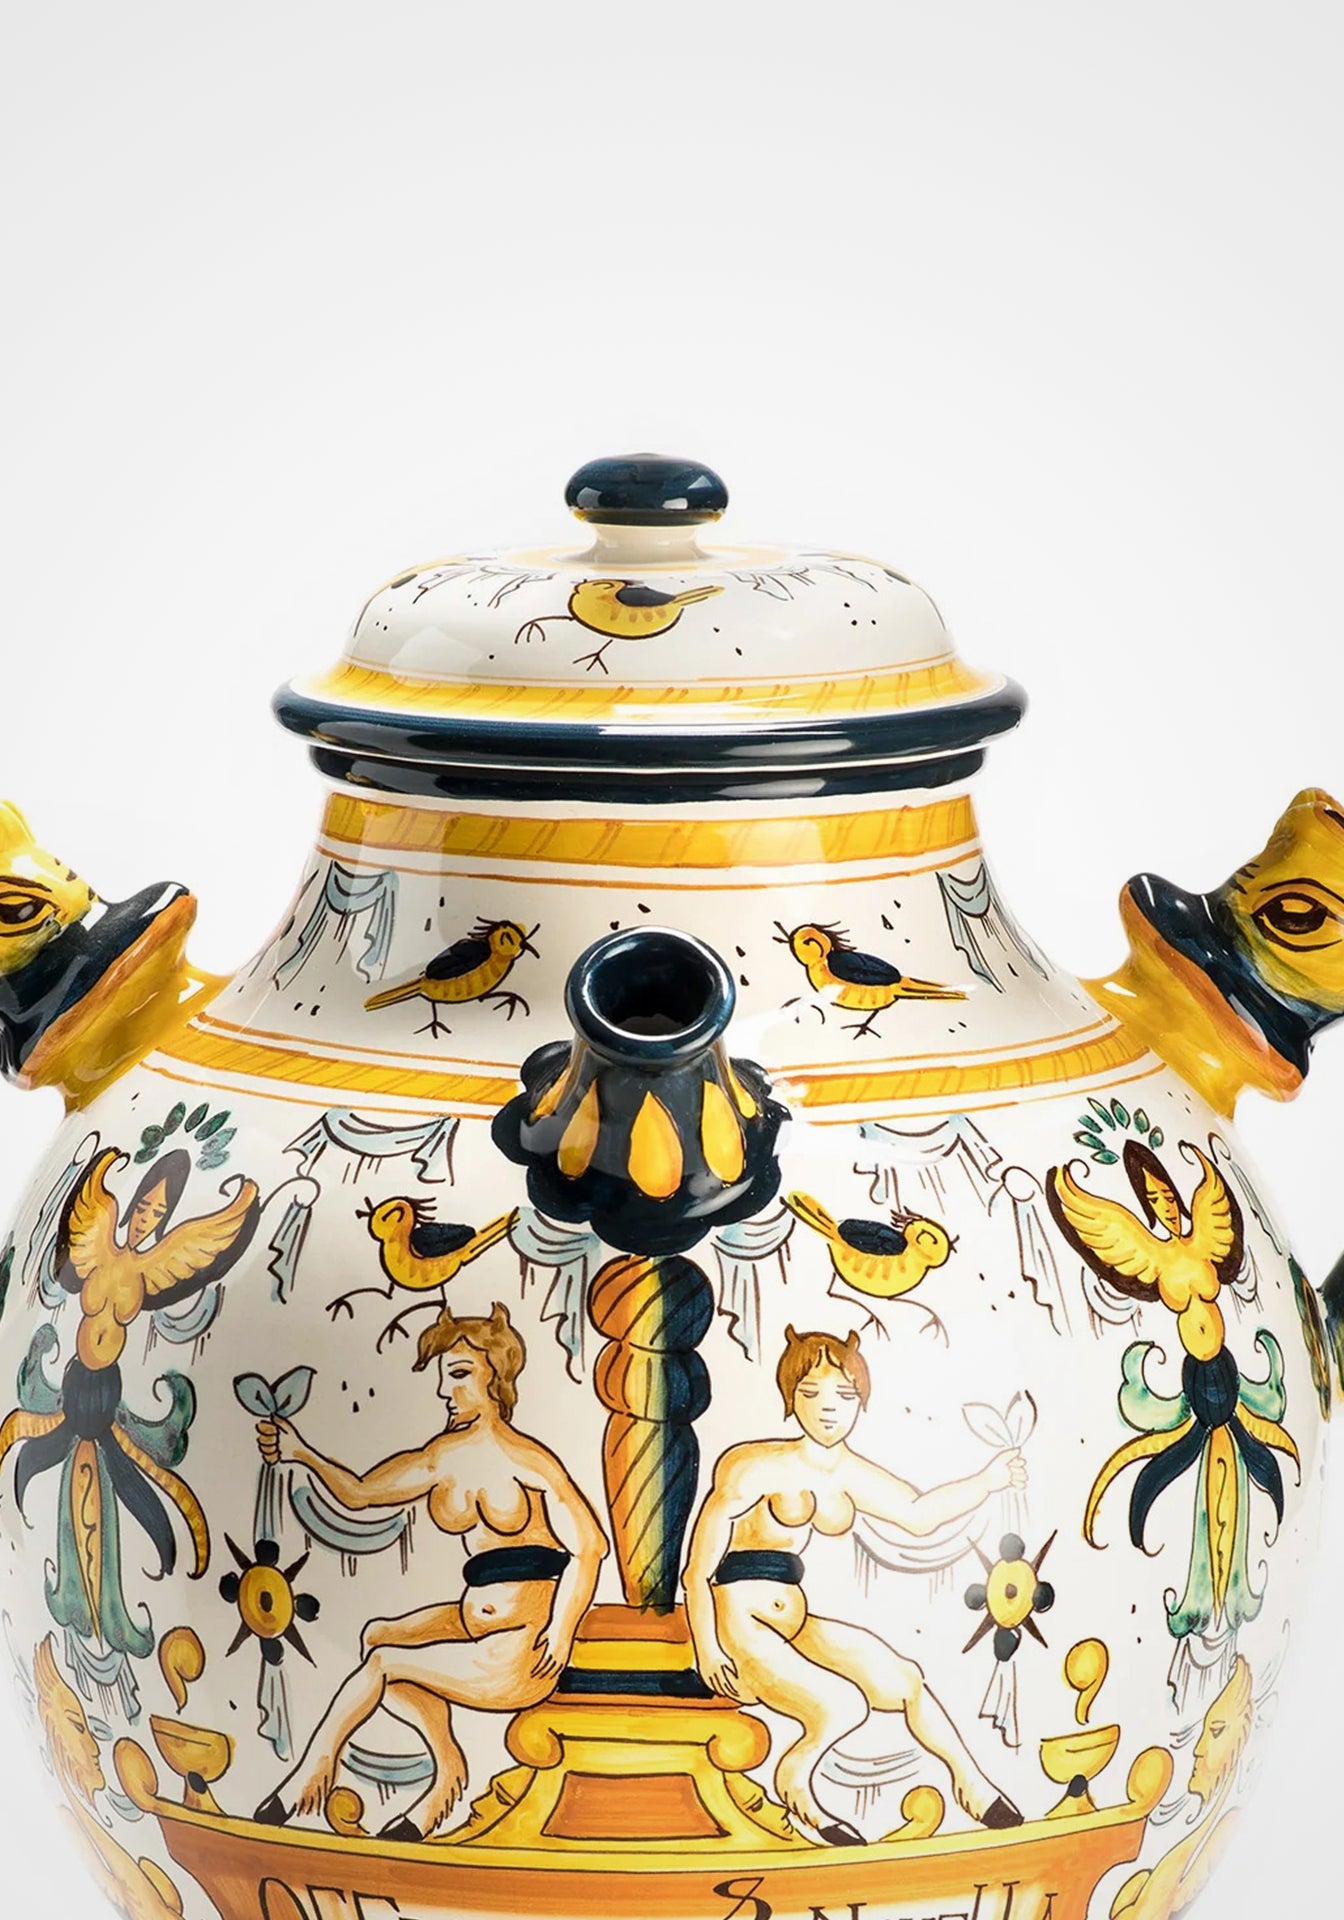 Ceramic Rectangular Decoration Vase, Large